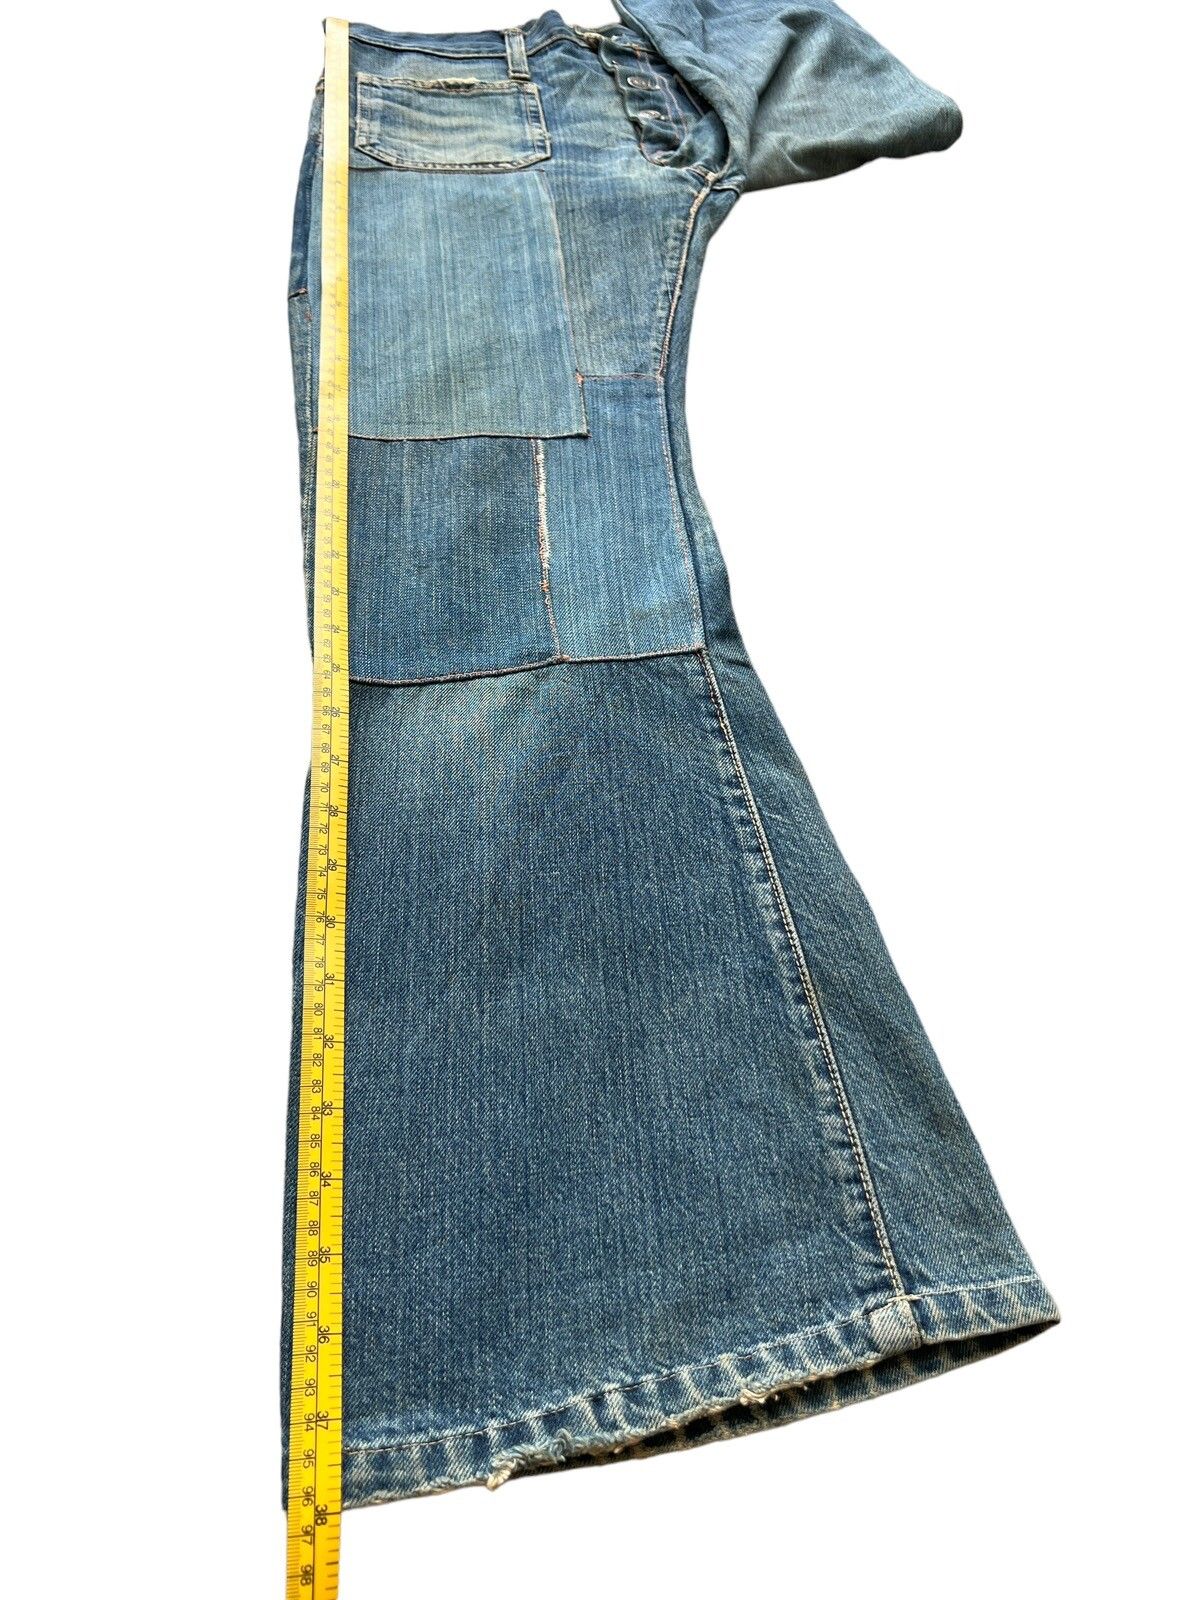 Hype - Vintage 80s Edwin Bushpant Patchwork Distressed Flare Jeans - 13